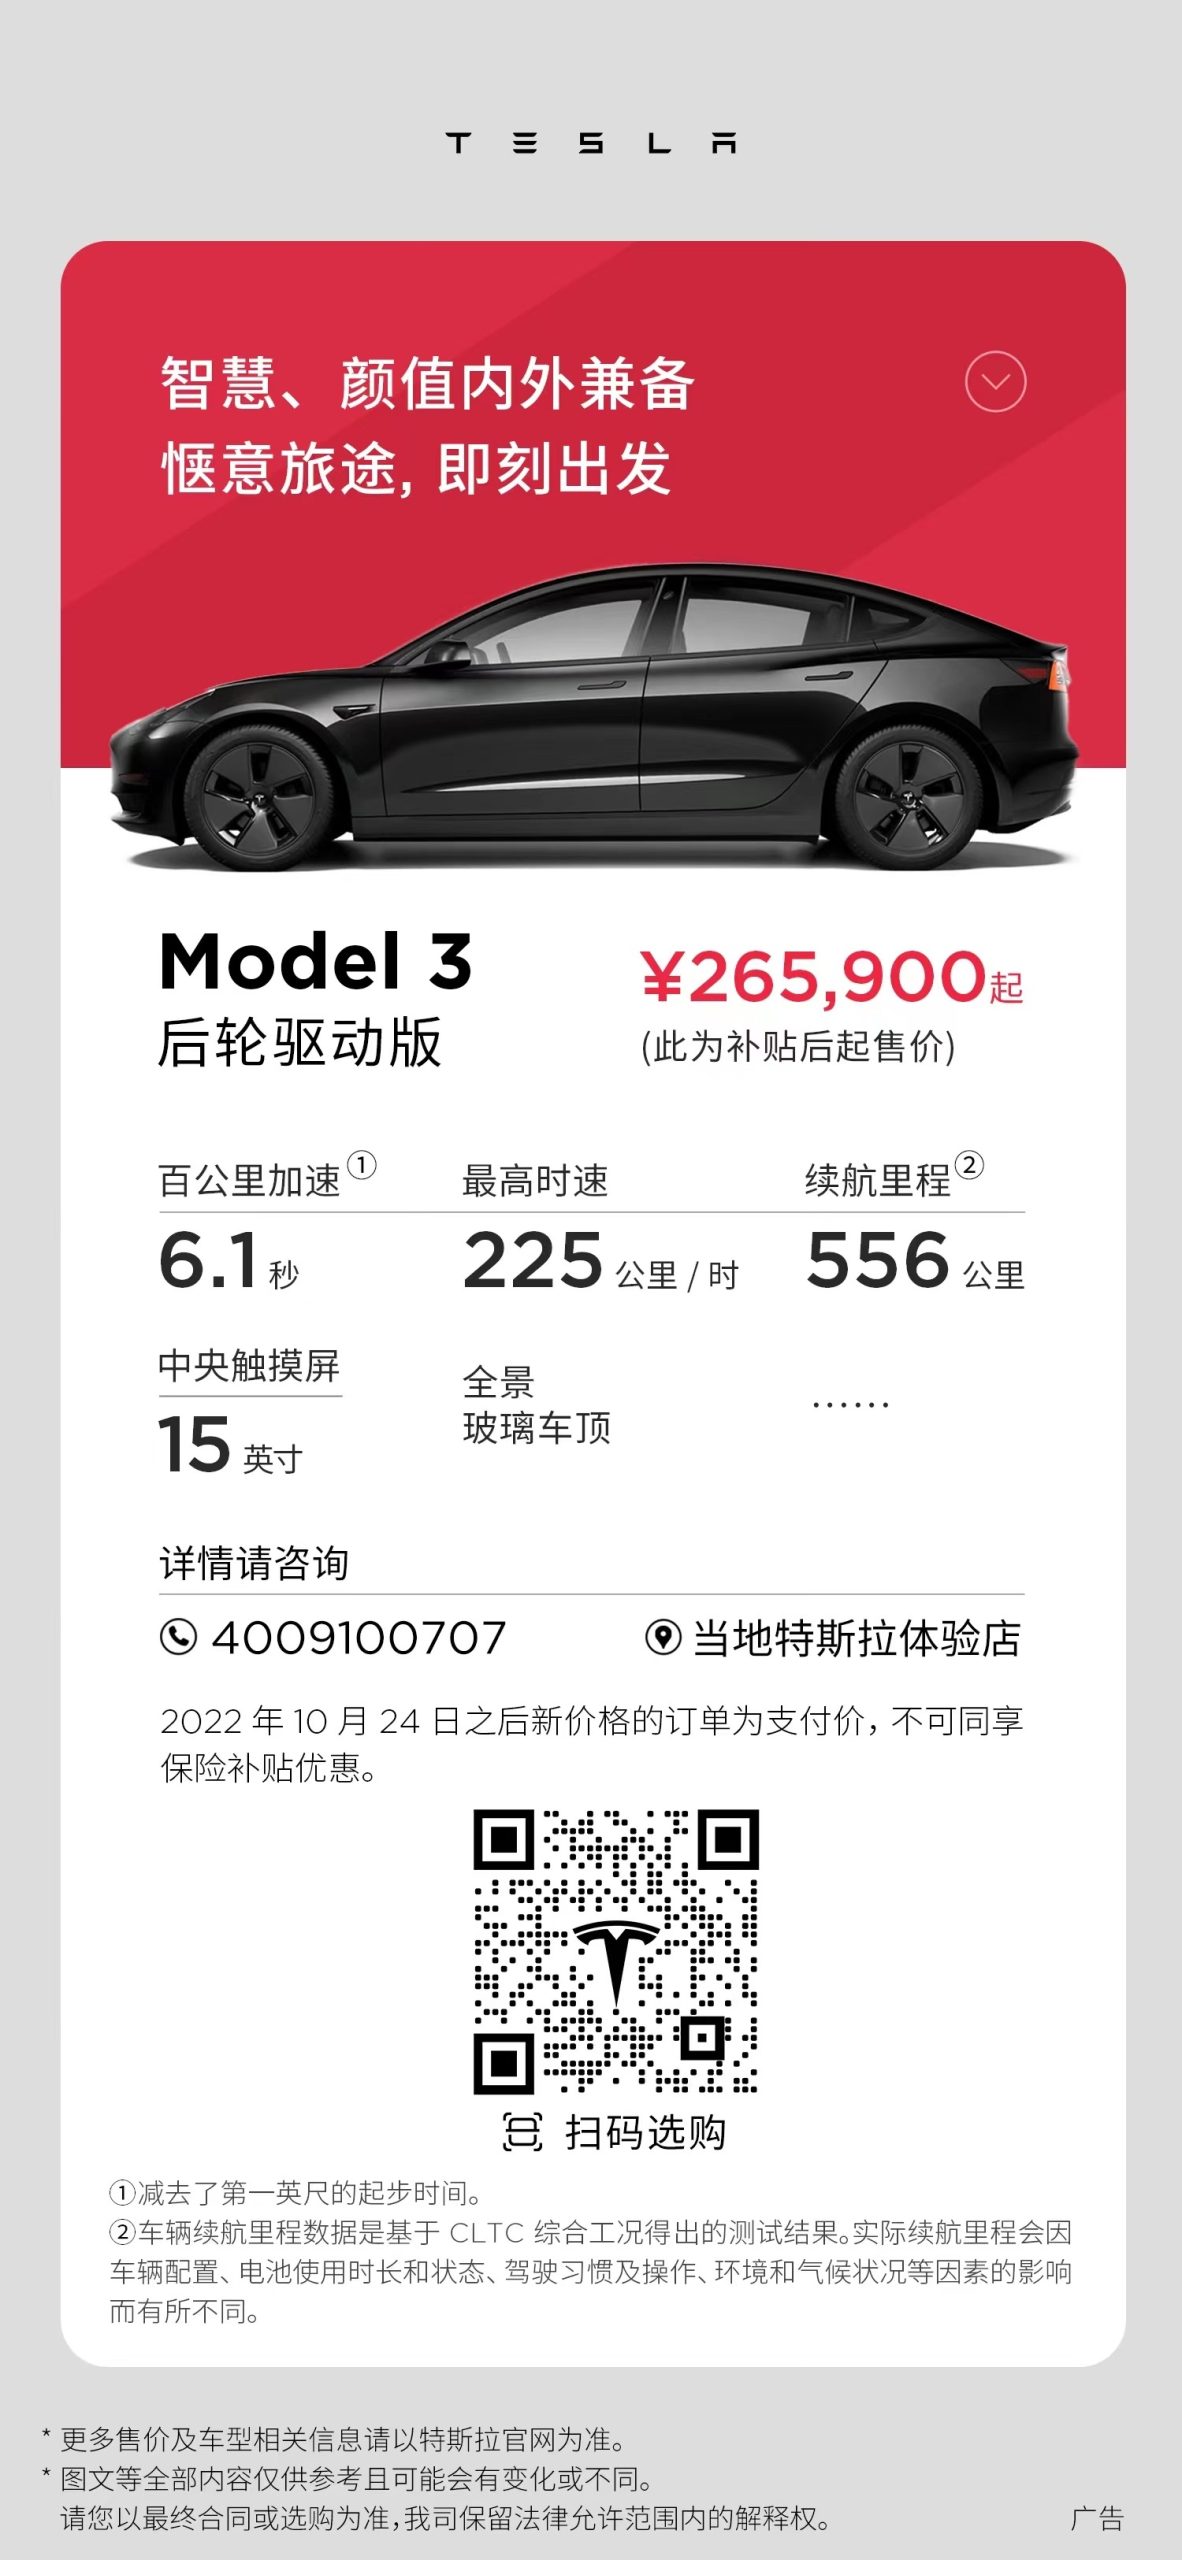 Tesla-China-Model-3-RWD-price-cut